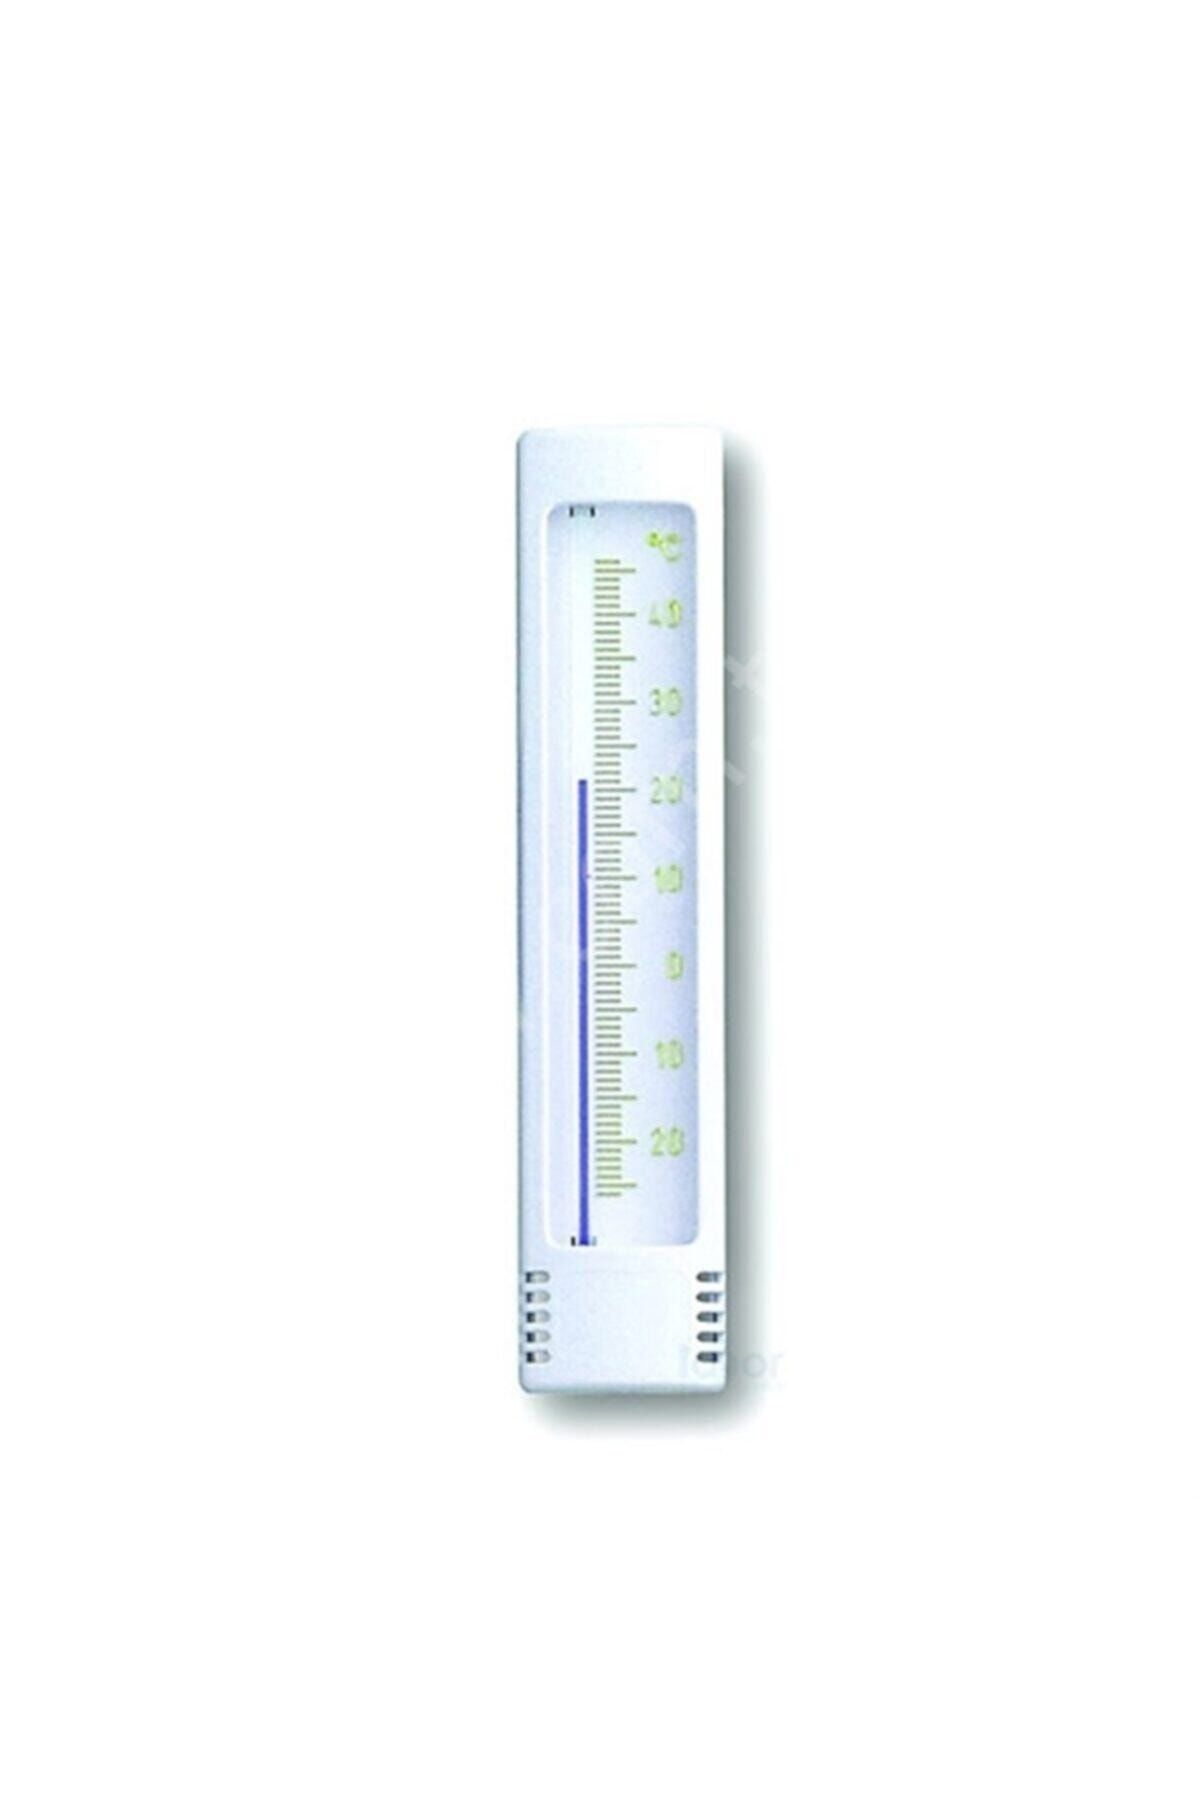 TFA Termometre Plastik Duvar 12.3023.02